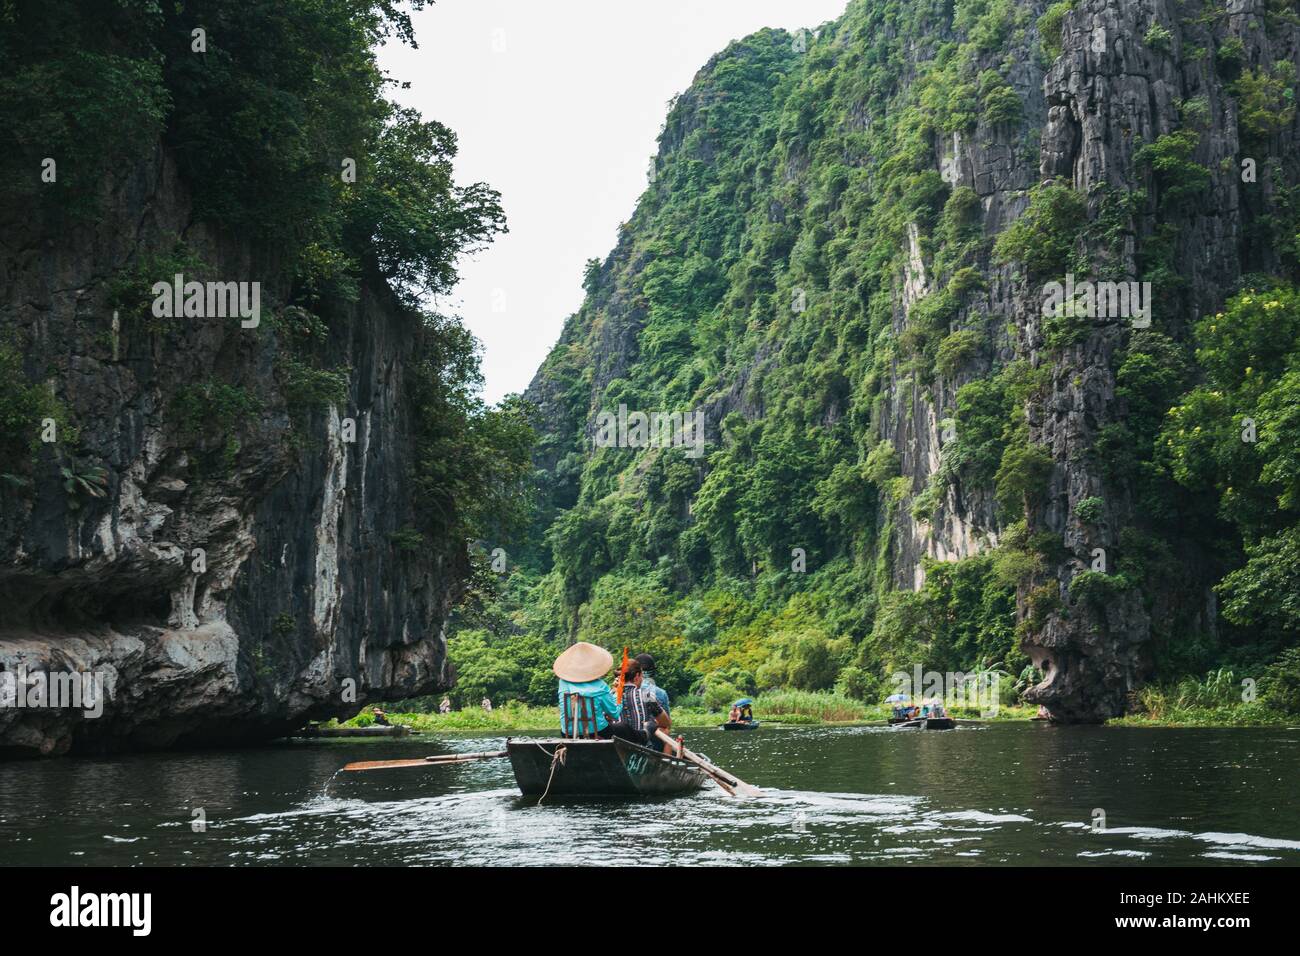 Los turistas en barcos fila hacia arriba el Río Dong ONG a través de las montañas de piedra caliza y cuevas de Tam Coc, provincia de Ninh Binh, Vietnam Foto de stock